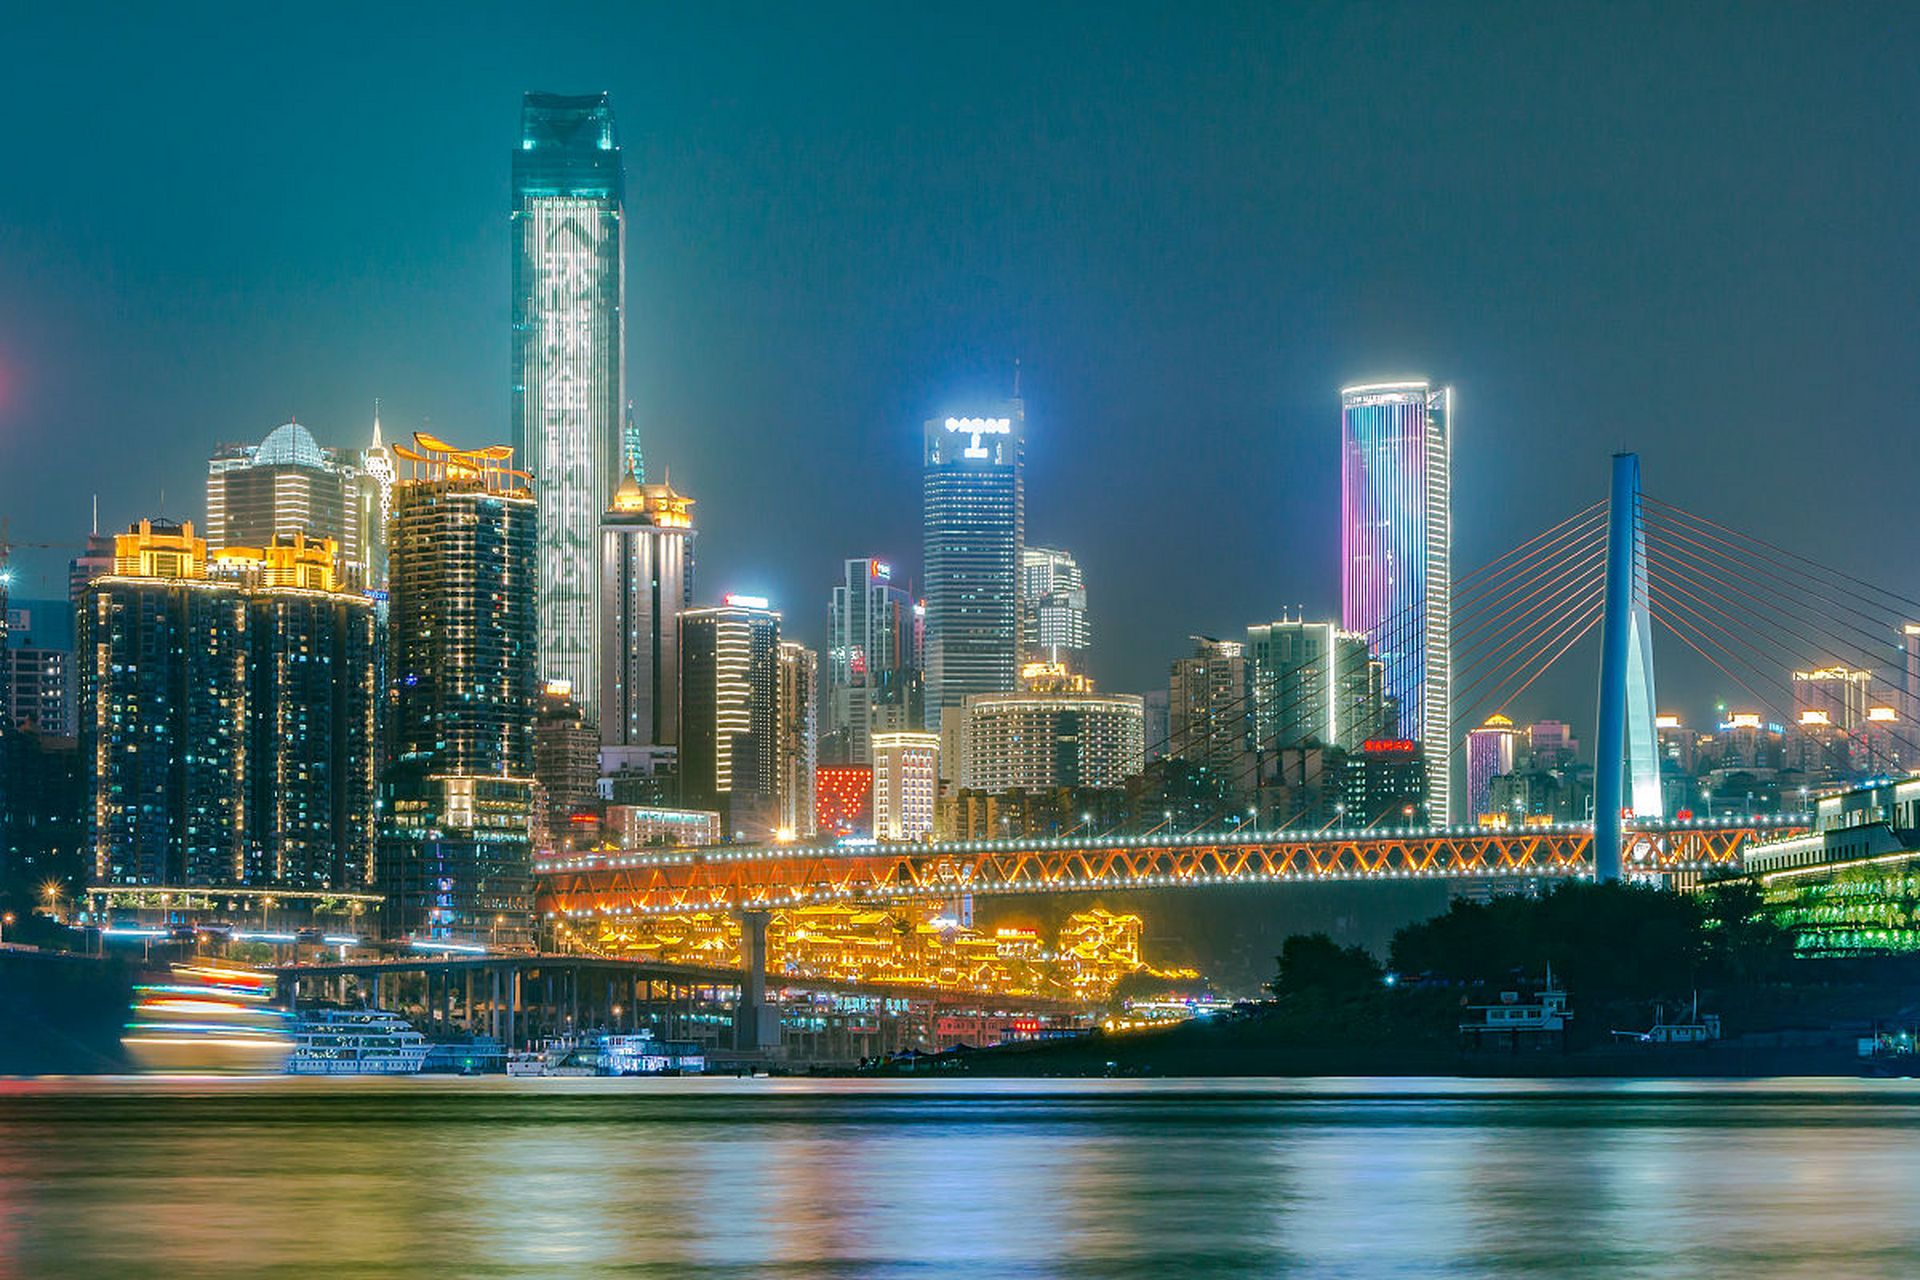 重庆夜景观赏线路  重庆夜景,如同一幅流动的彩色画卷,灯火辉煌,美不